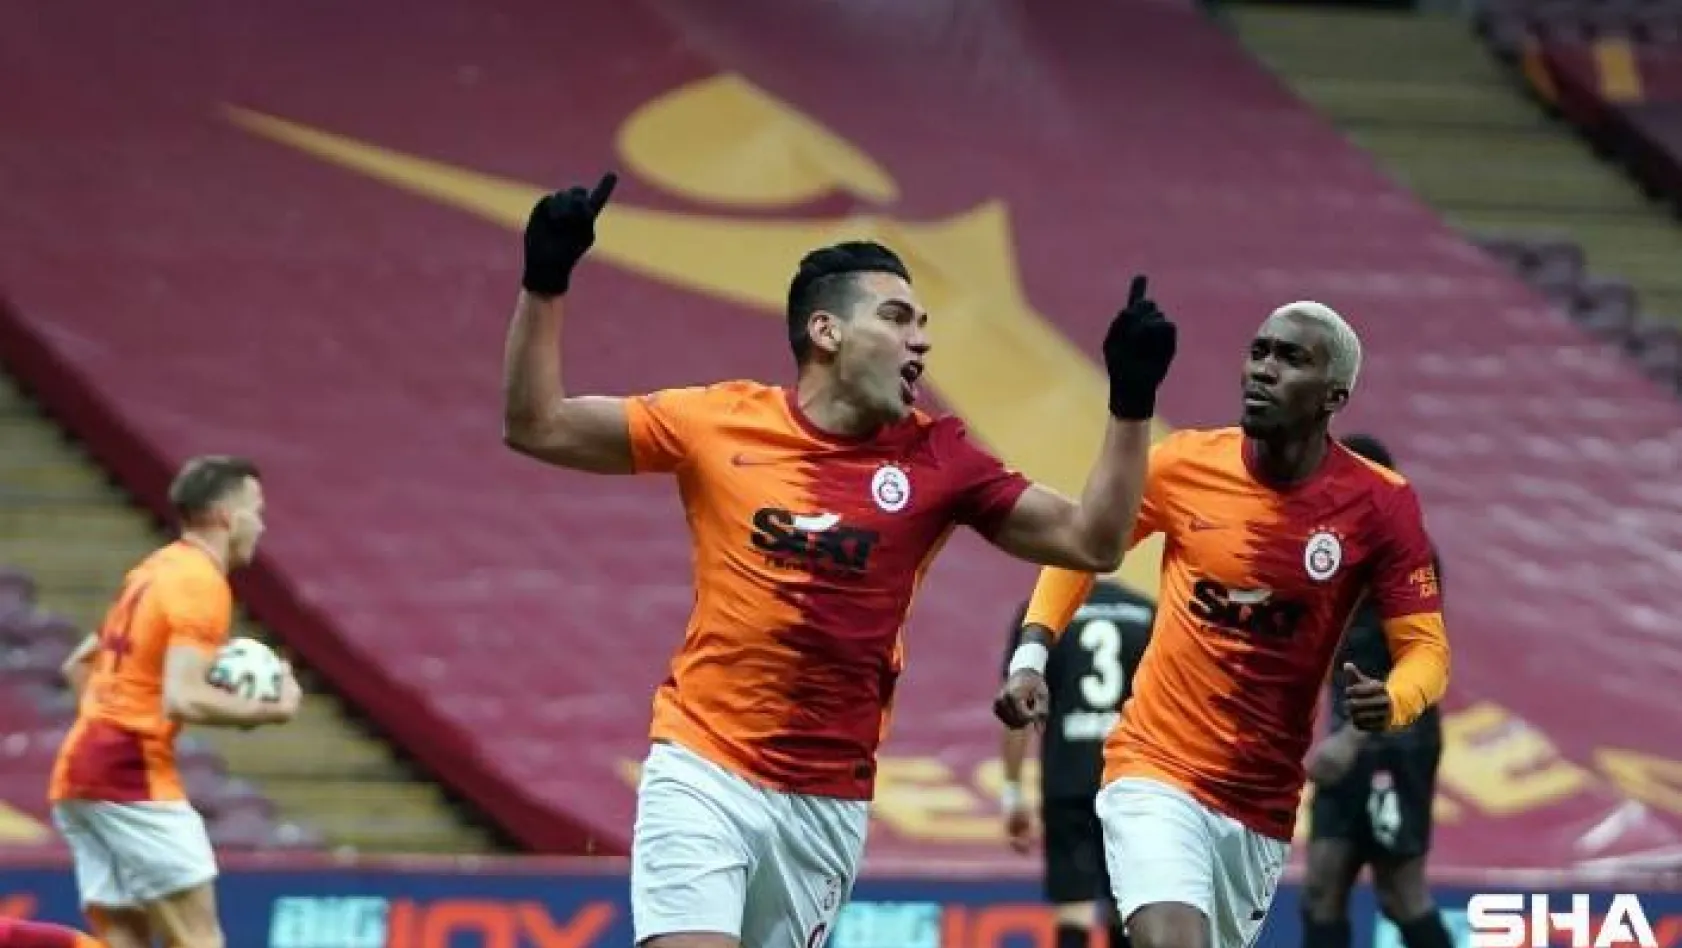 Süper Lig: Galatasaray: 1 - Sivasspor: 1 (Maç devam ediyor)